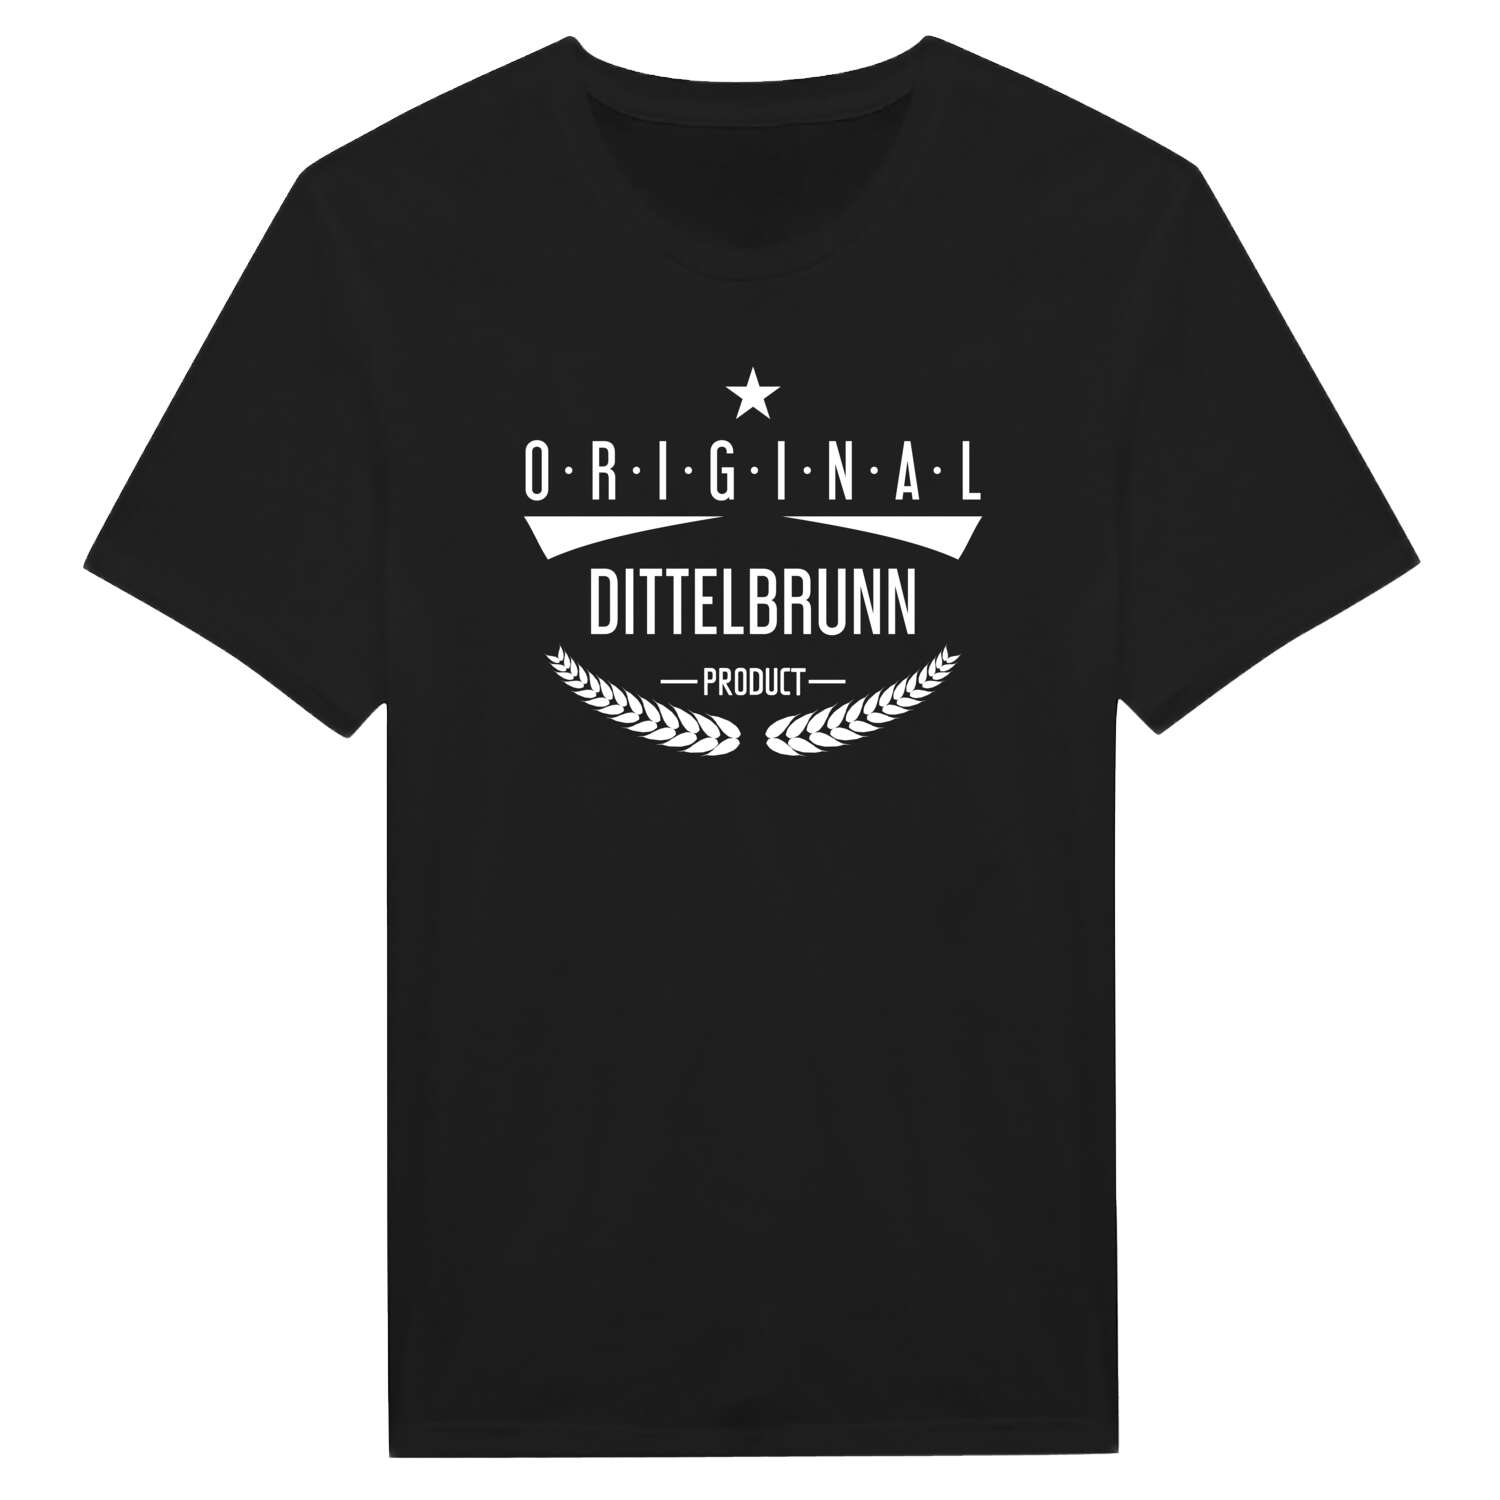 Dittelbrunn T-Shirt »Original Product«